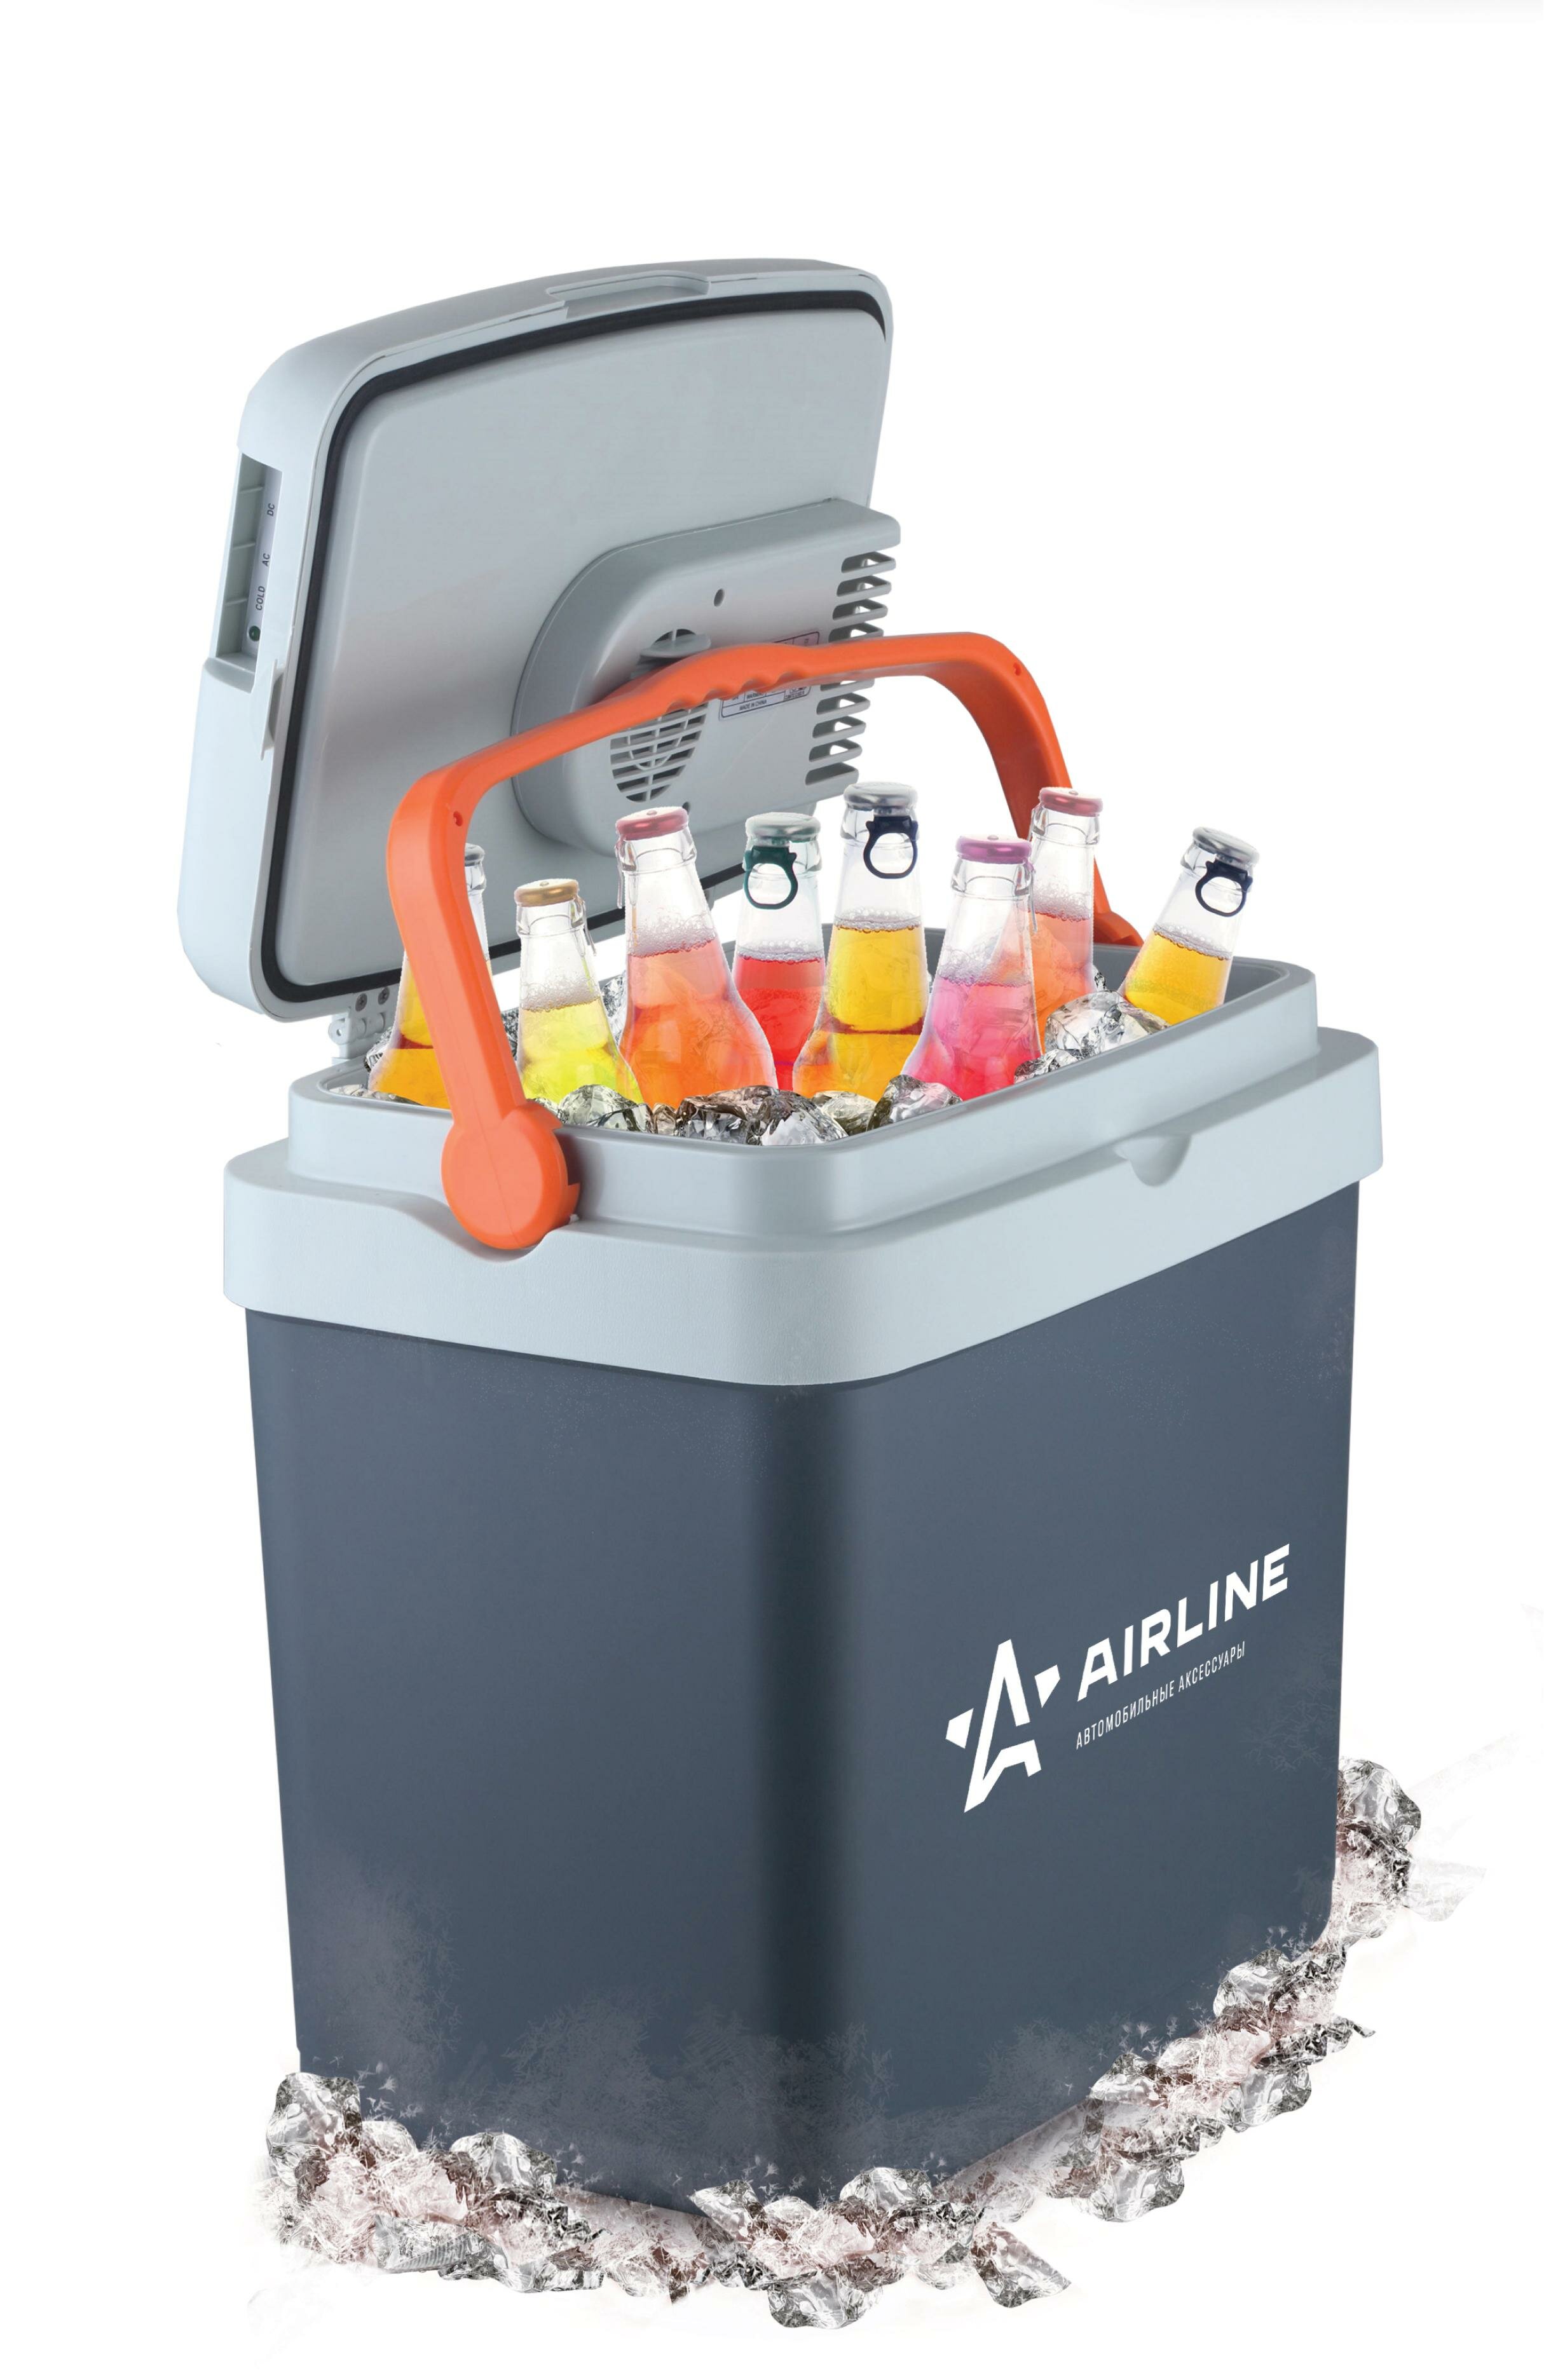 Airline1 AIRLINE Холодильникнагреватель автомобильный термоэлектрический (33л), 12В (ACFK005)